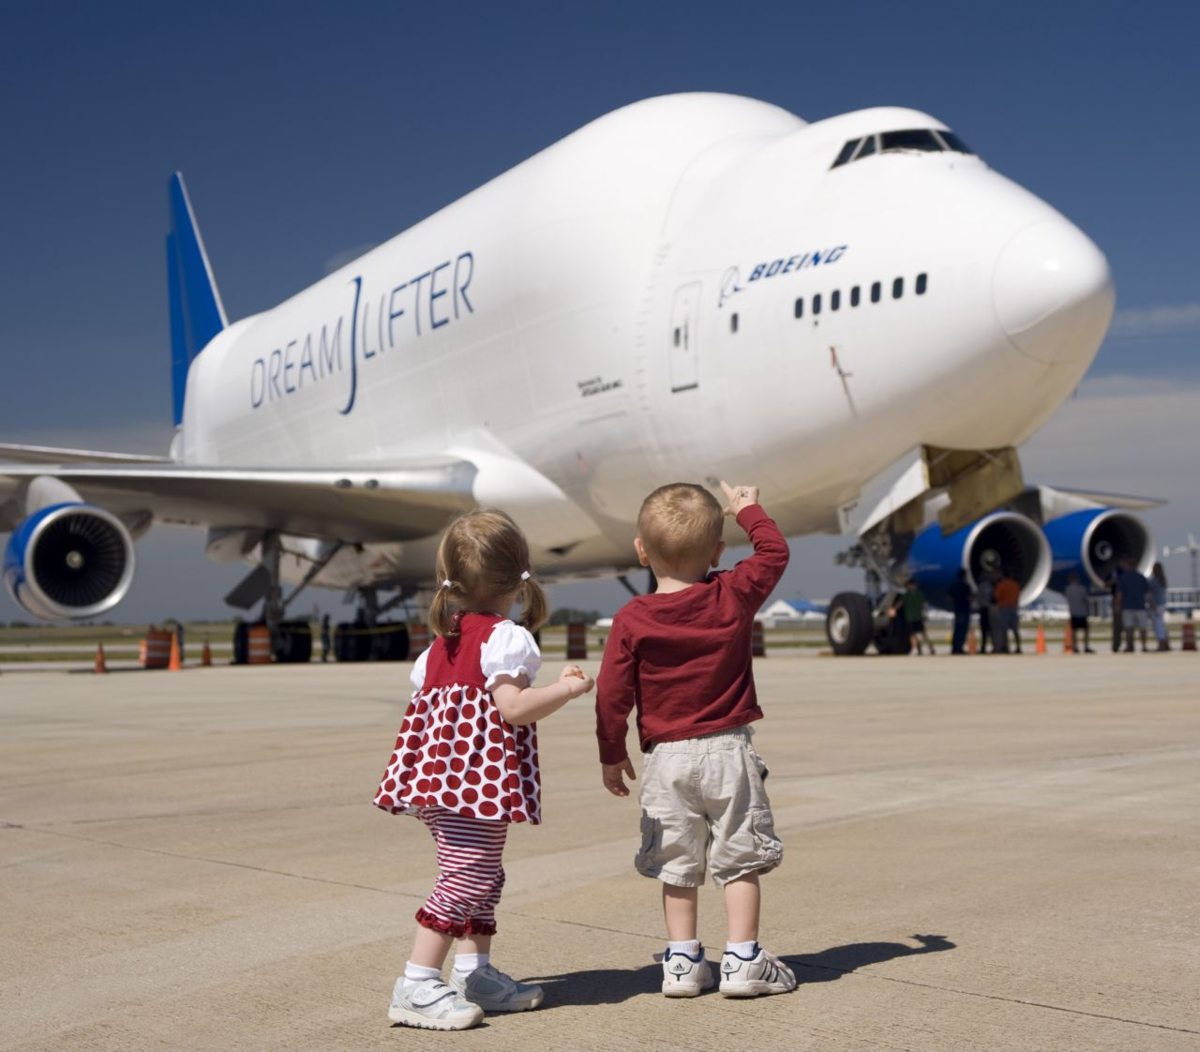 Показать авиарейсы. Самолеткдля детей. Самолет для дошкольников. Авиация для детей. Путешествие на самолете для детей.